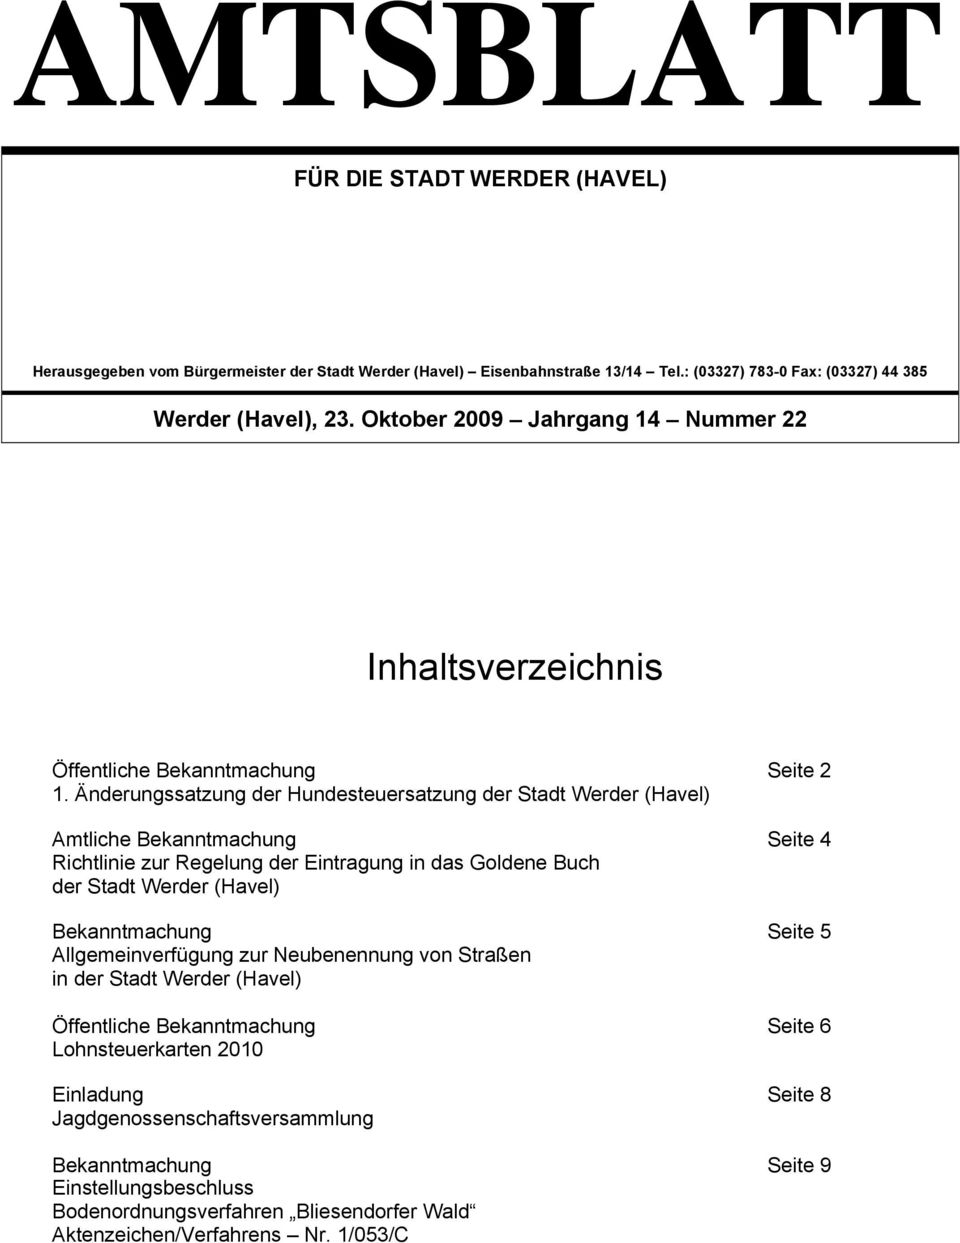 Änderungssatzung der Hundesteuersatzung der Stadt Werder (Havel) Amtliche Bekanntmachung Seite 4 Richtlinie zur Regelung der Eintragung in das Goldene Buch der Stadt Werder (Havel)